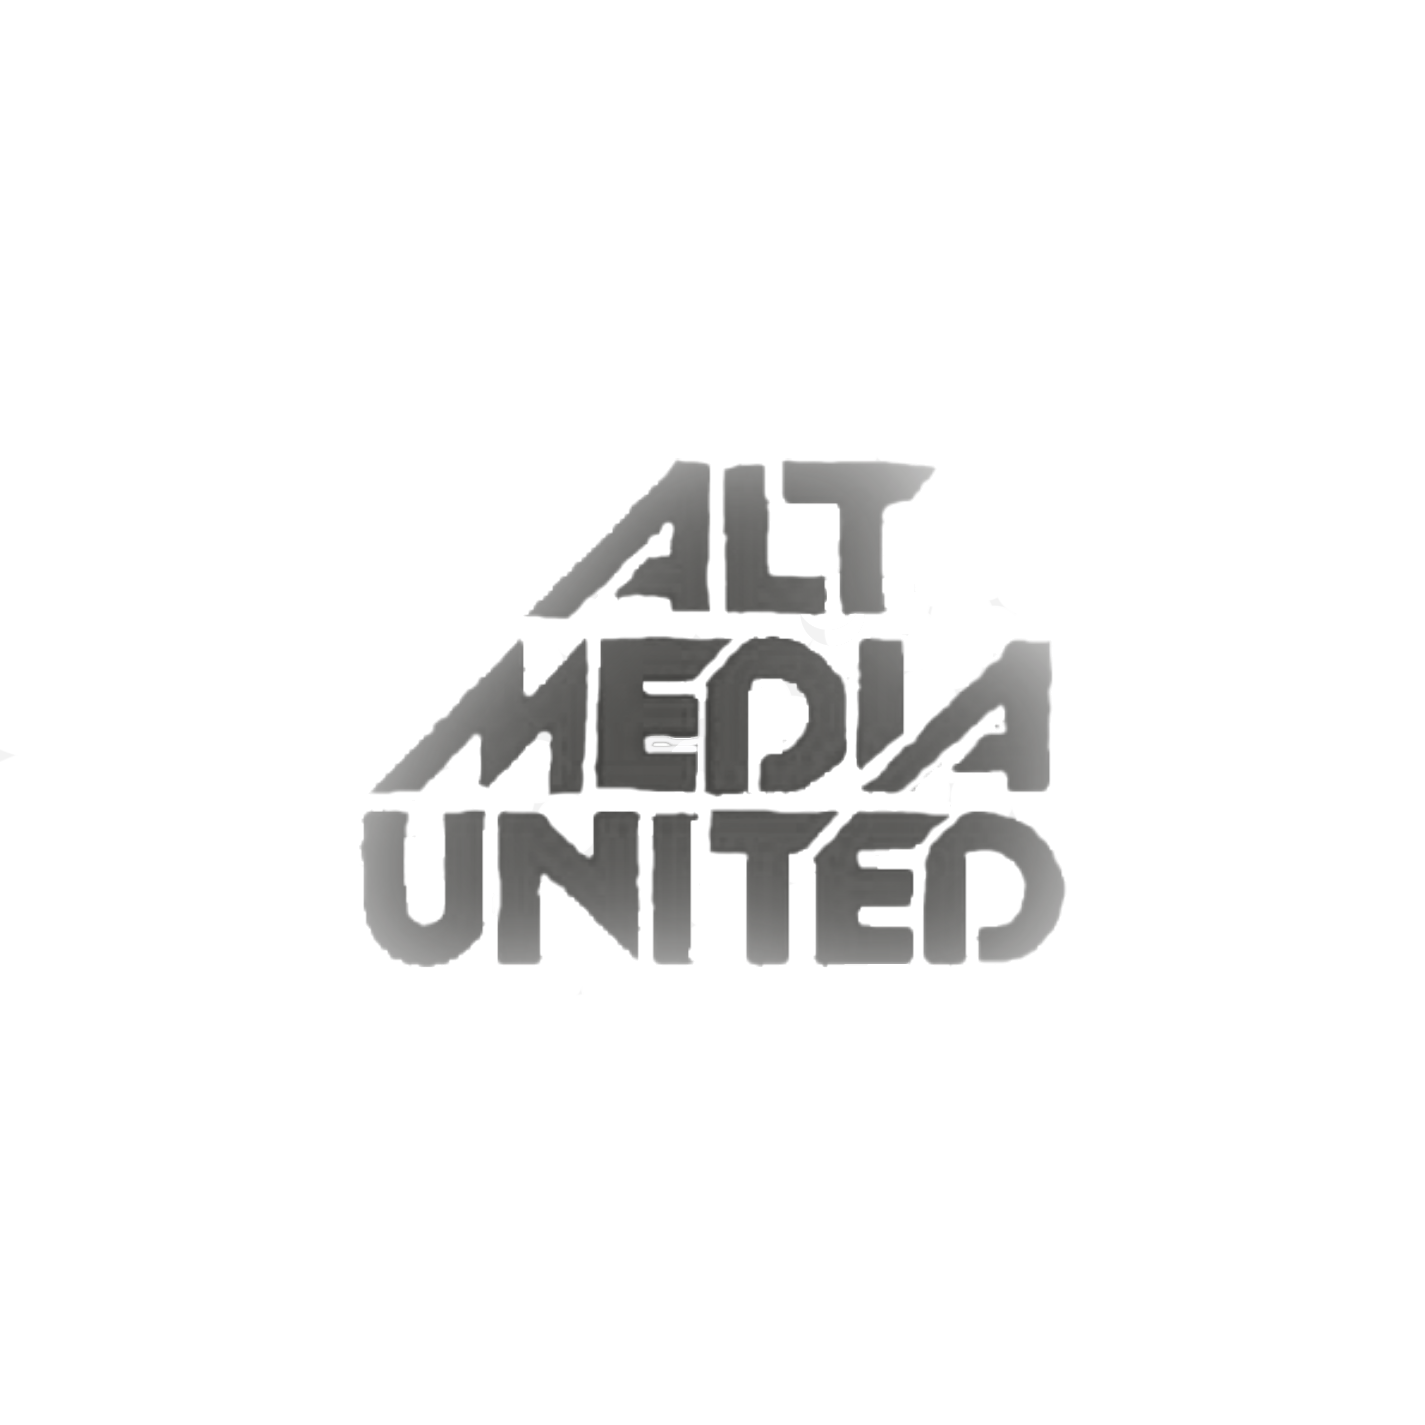 Alt Media United